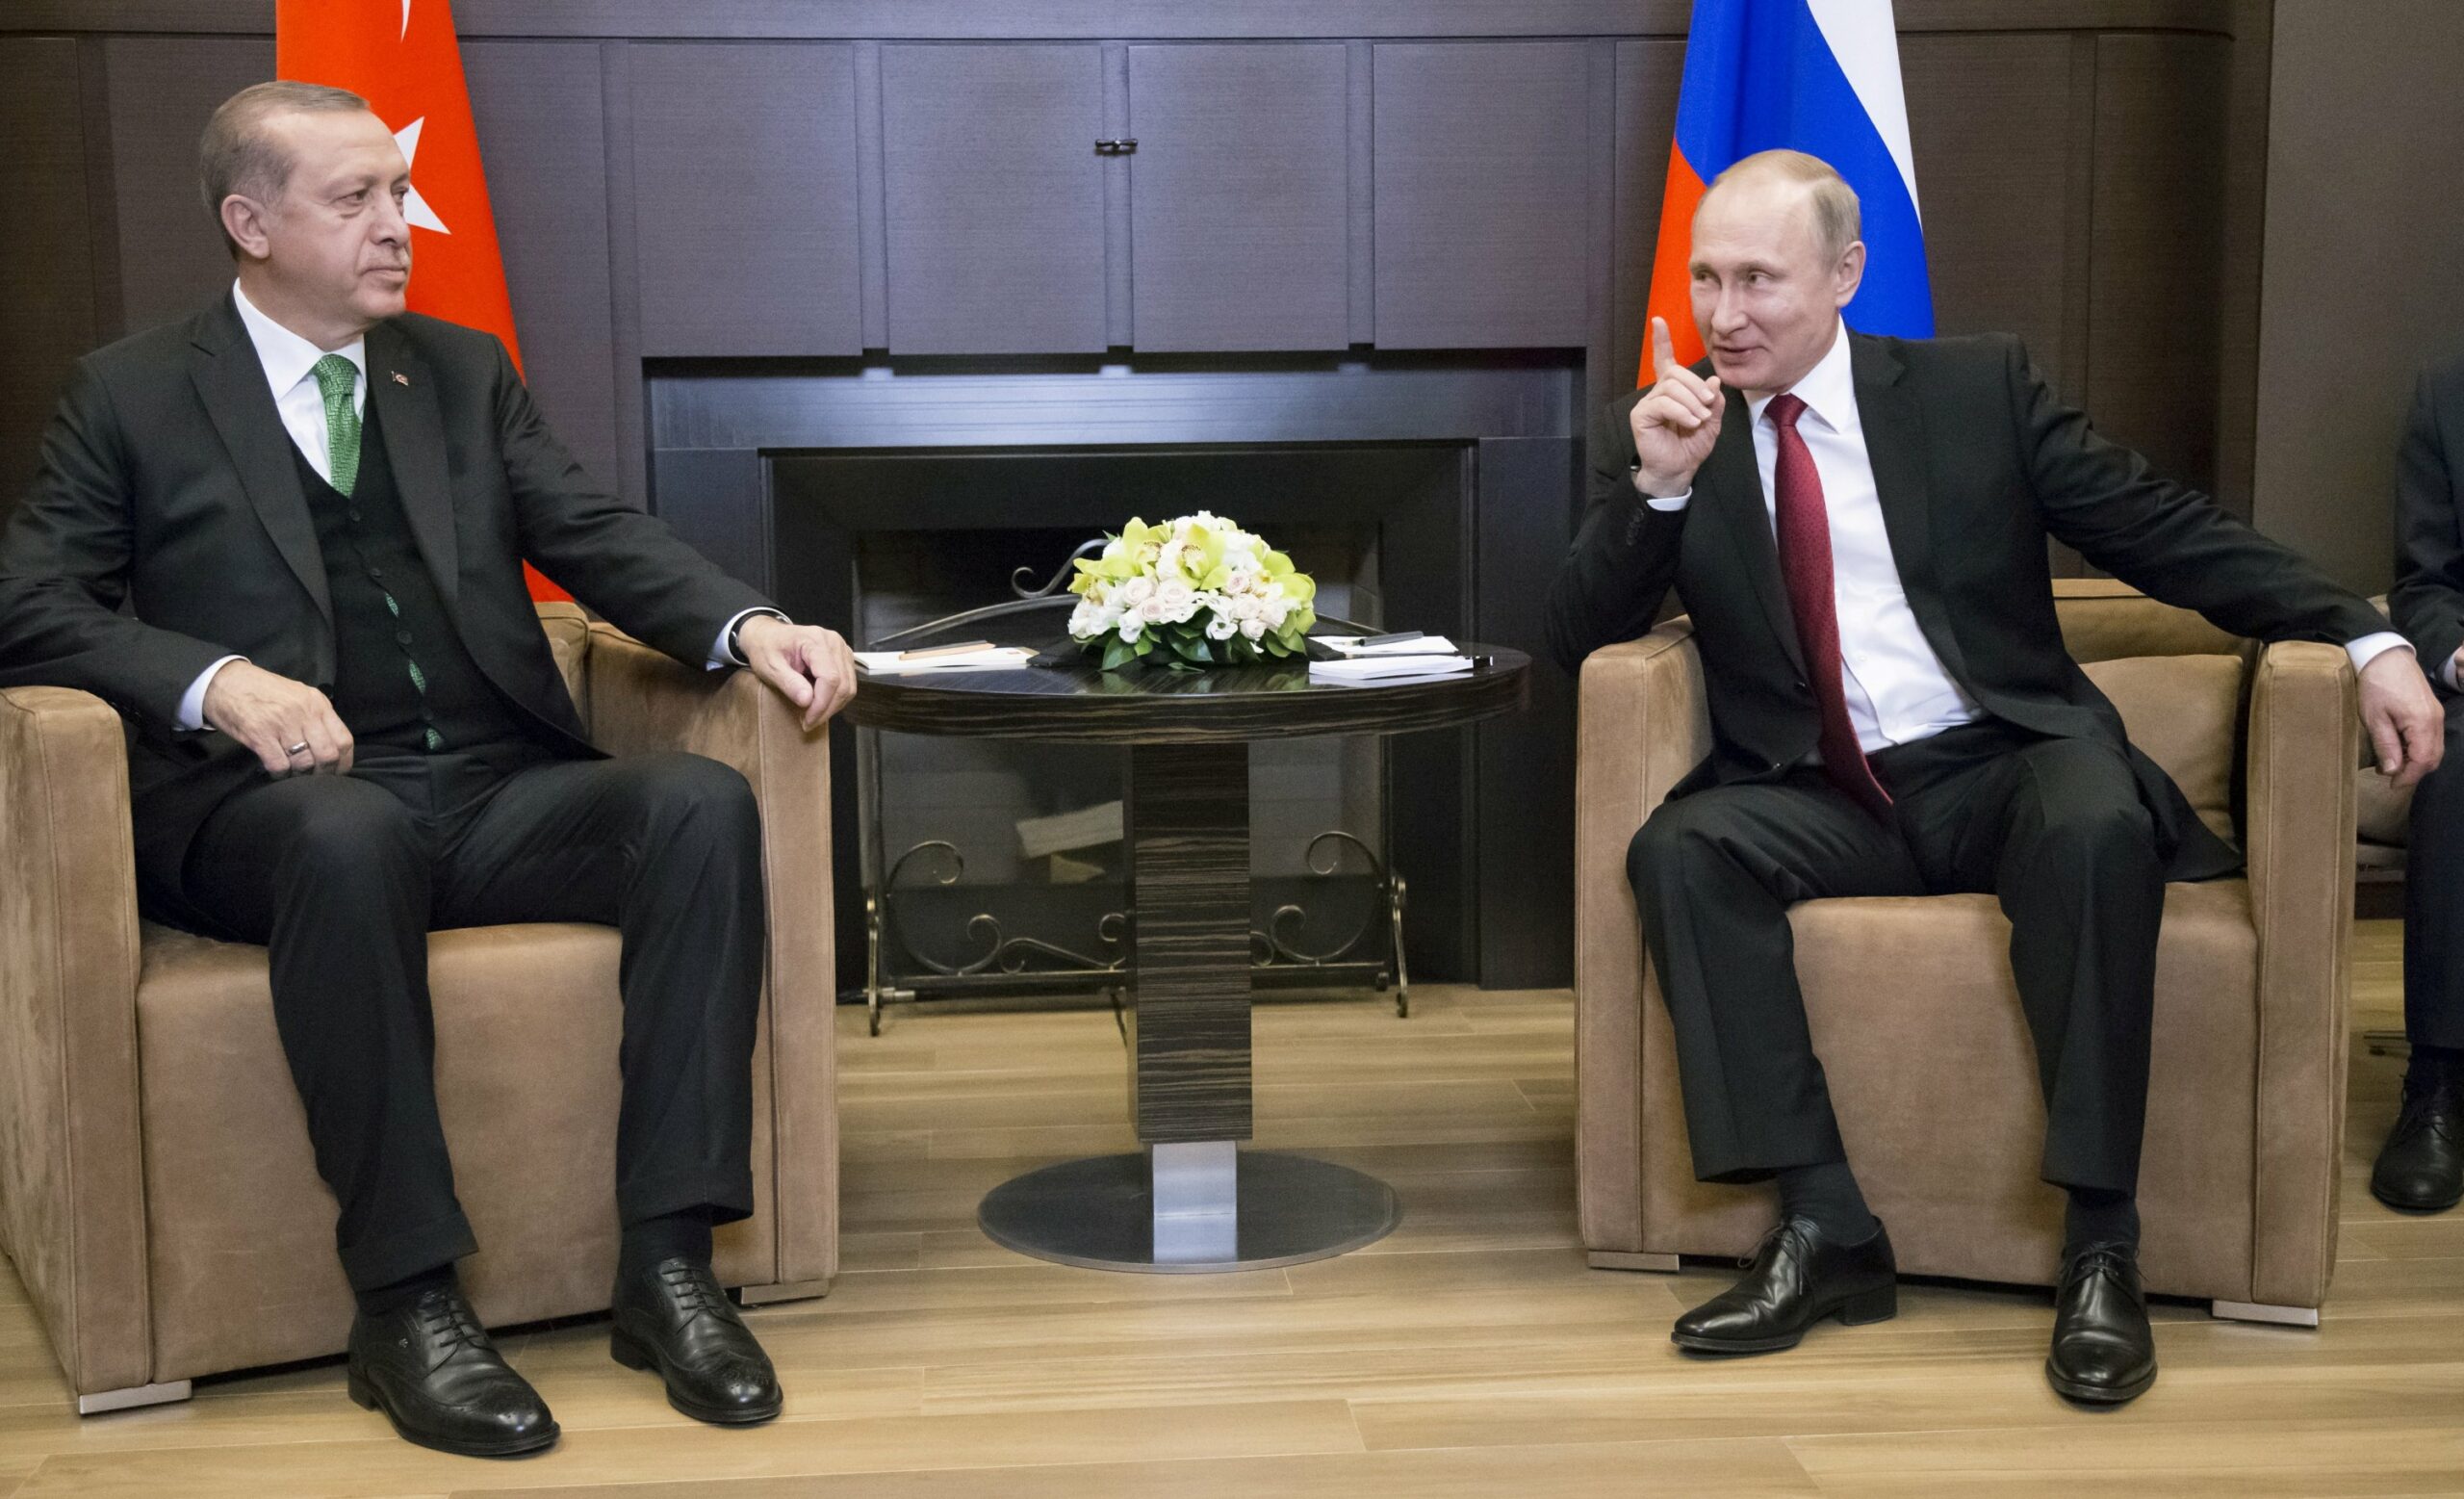 Συρία, Λιβύη, Αφγανιστάν και ρωσοτουρκικές σχέσεις στο επίκεντρο των συνομιλιών  Πούτιν - Ερντογάν